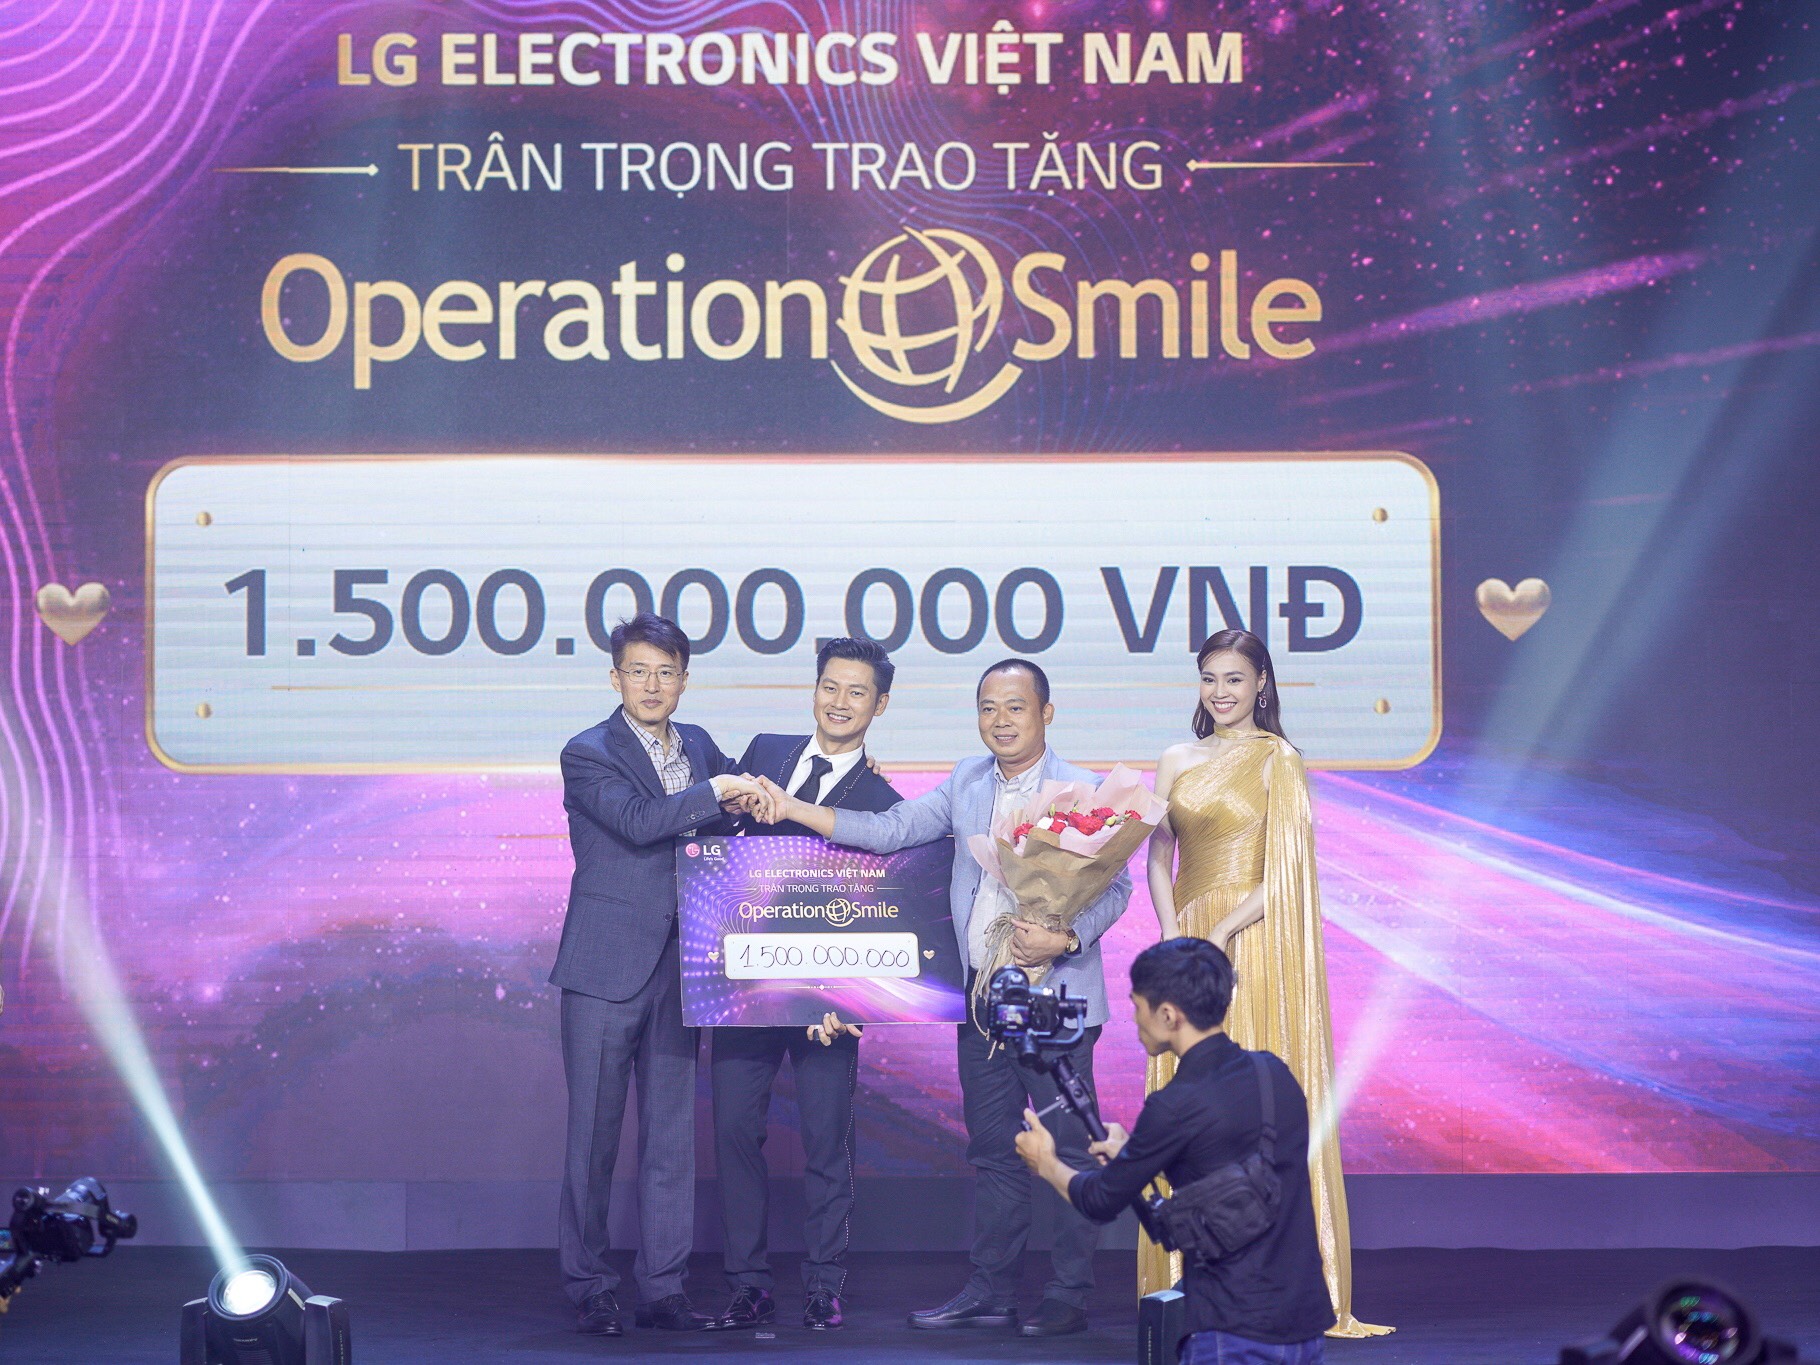 LG Việt Nam đấu giá TV OLED 8K đầu tiên trên thế giới, dành tặng 1.5 tỷ đồng cho tổ chức “Phẫu thuật nụ cười”